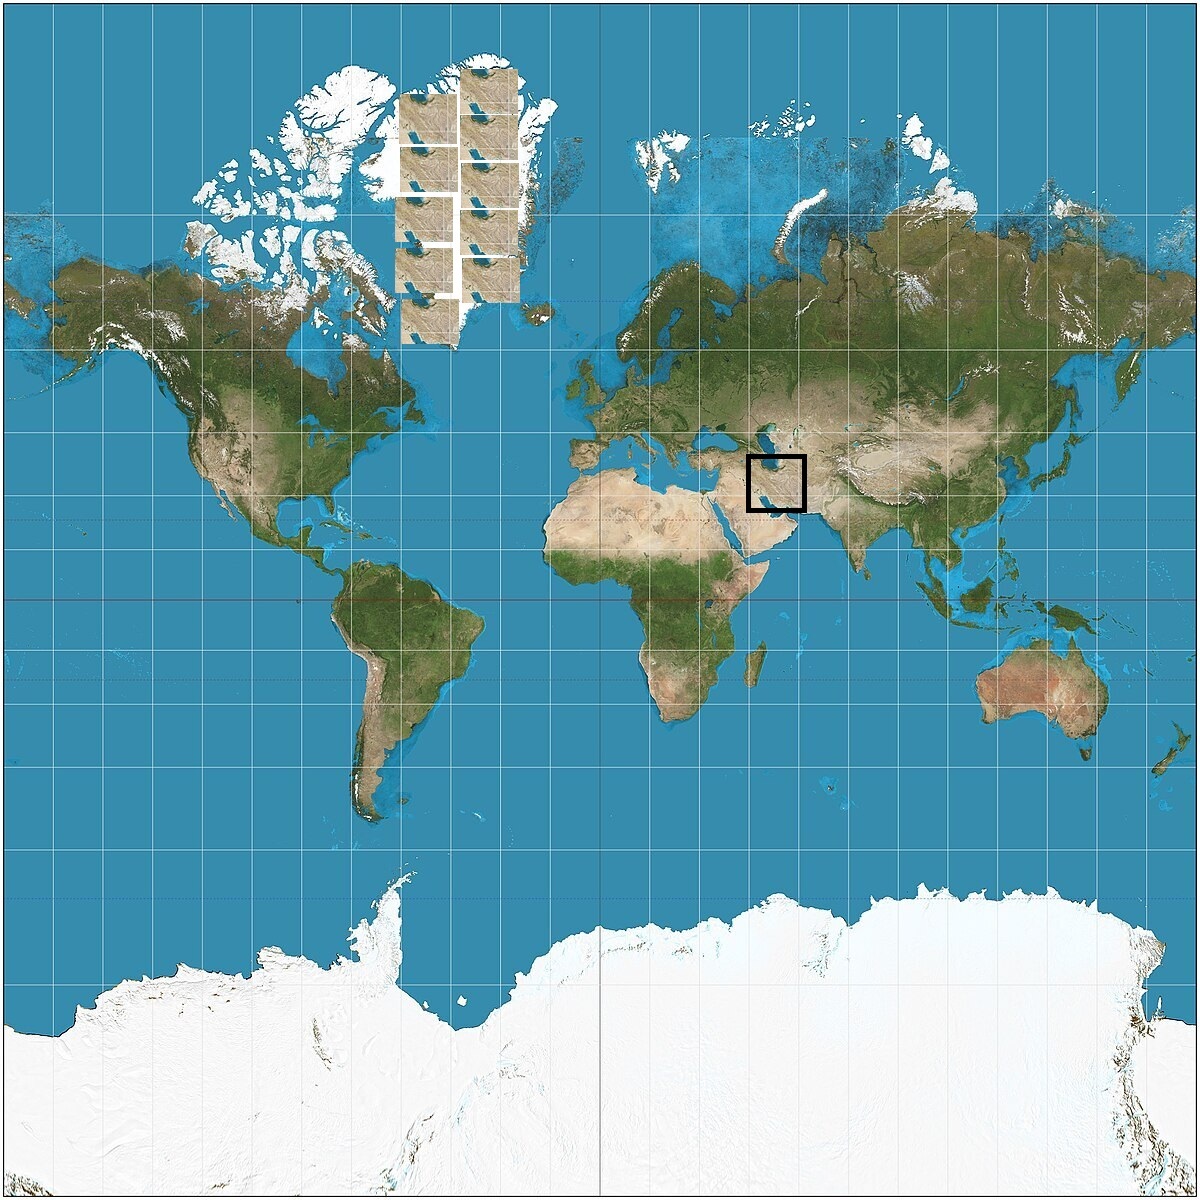 نقشه جهان یک غلط بزرگ است / اندازه واقعی کشورها را در این سایت ببینید! (+تصاویر)